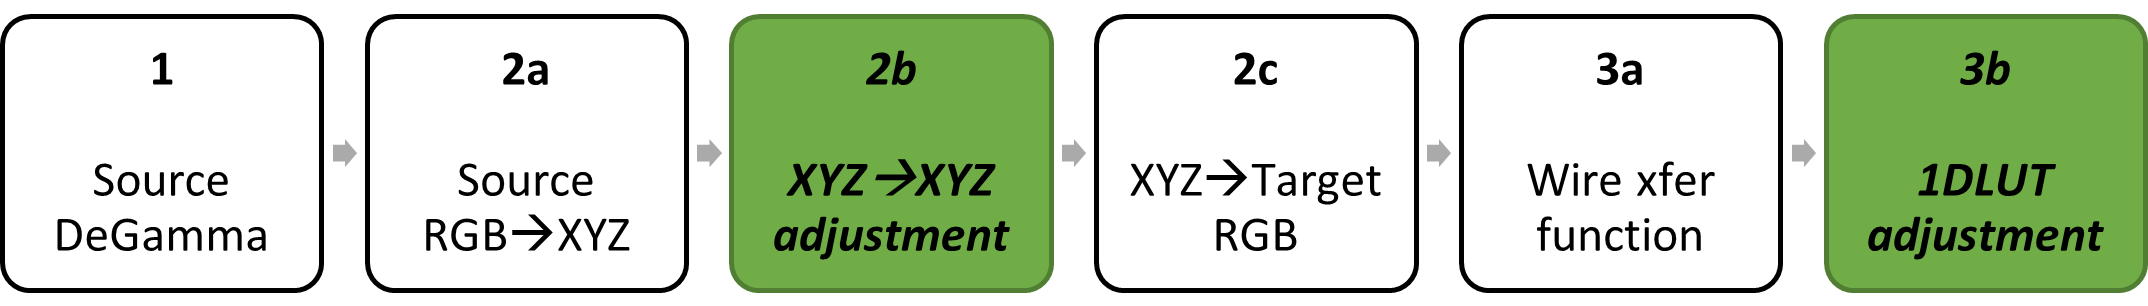 diagramme de blocs : degamma source ; matrice de couleurs décomposée en RVB source en XYZ, XYZ en XYZ et XYZ en RVB cible ; regamma cible décomposé en fonction de transfert bancaire, réglage 1DLUT